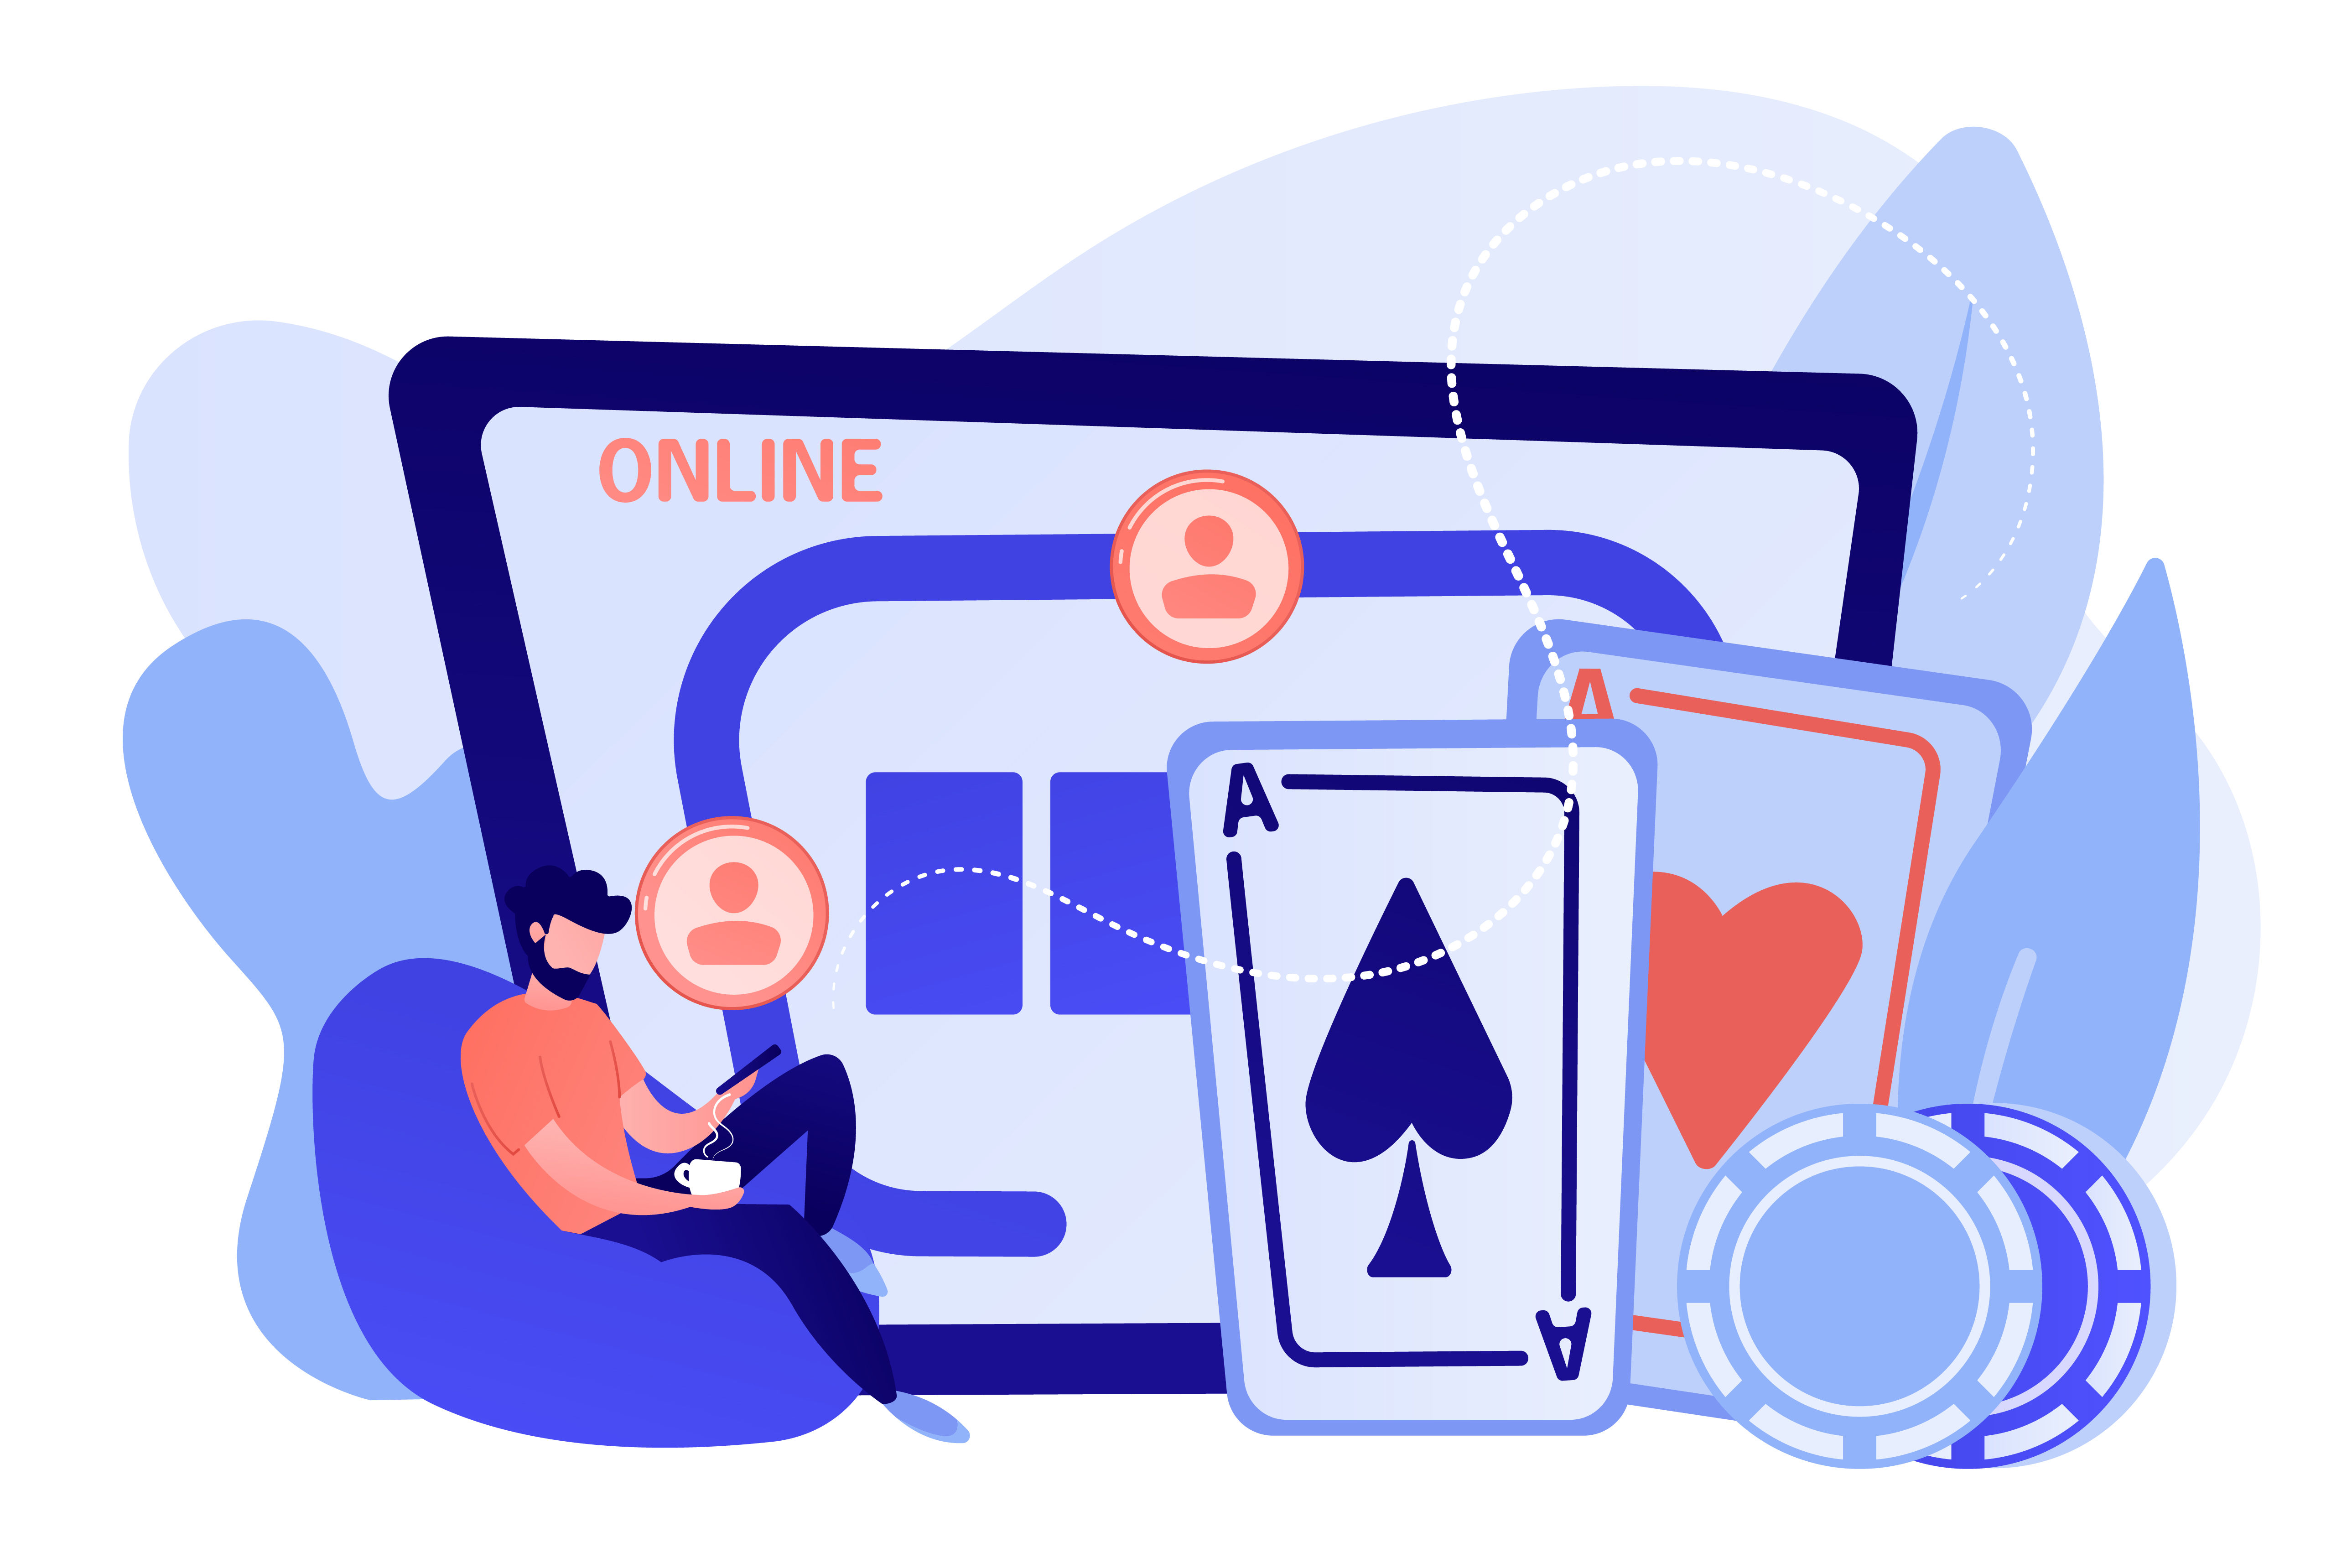 Judi Online merupakan jenis perjudian yang dilakukan di Internet meliputi Poker Virtual, Kasino, dan Taruhan Olahraga dan lain sebagainya